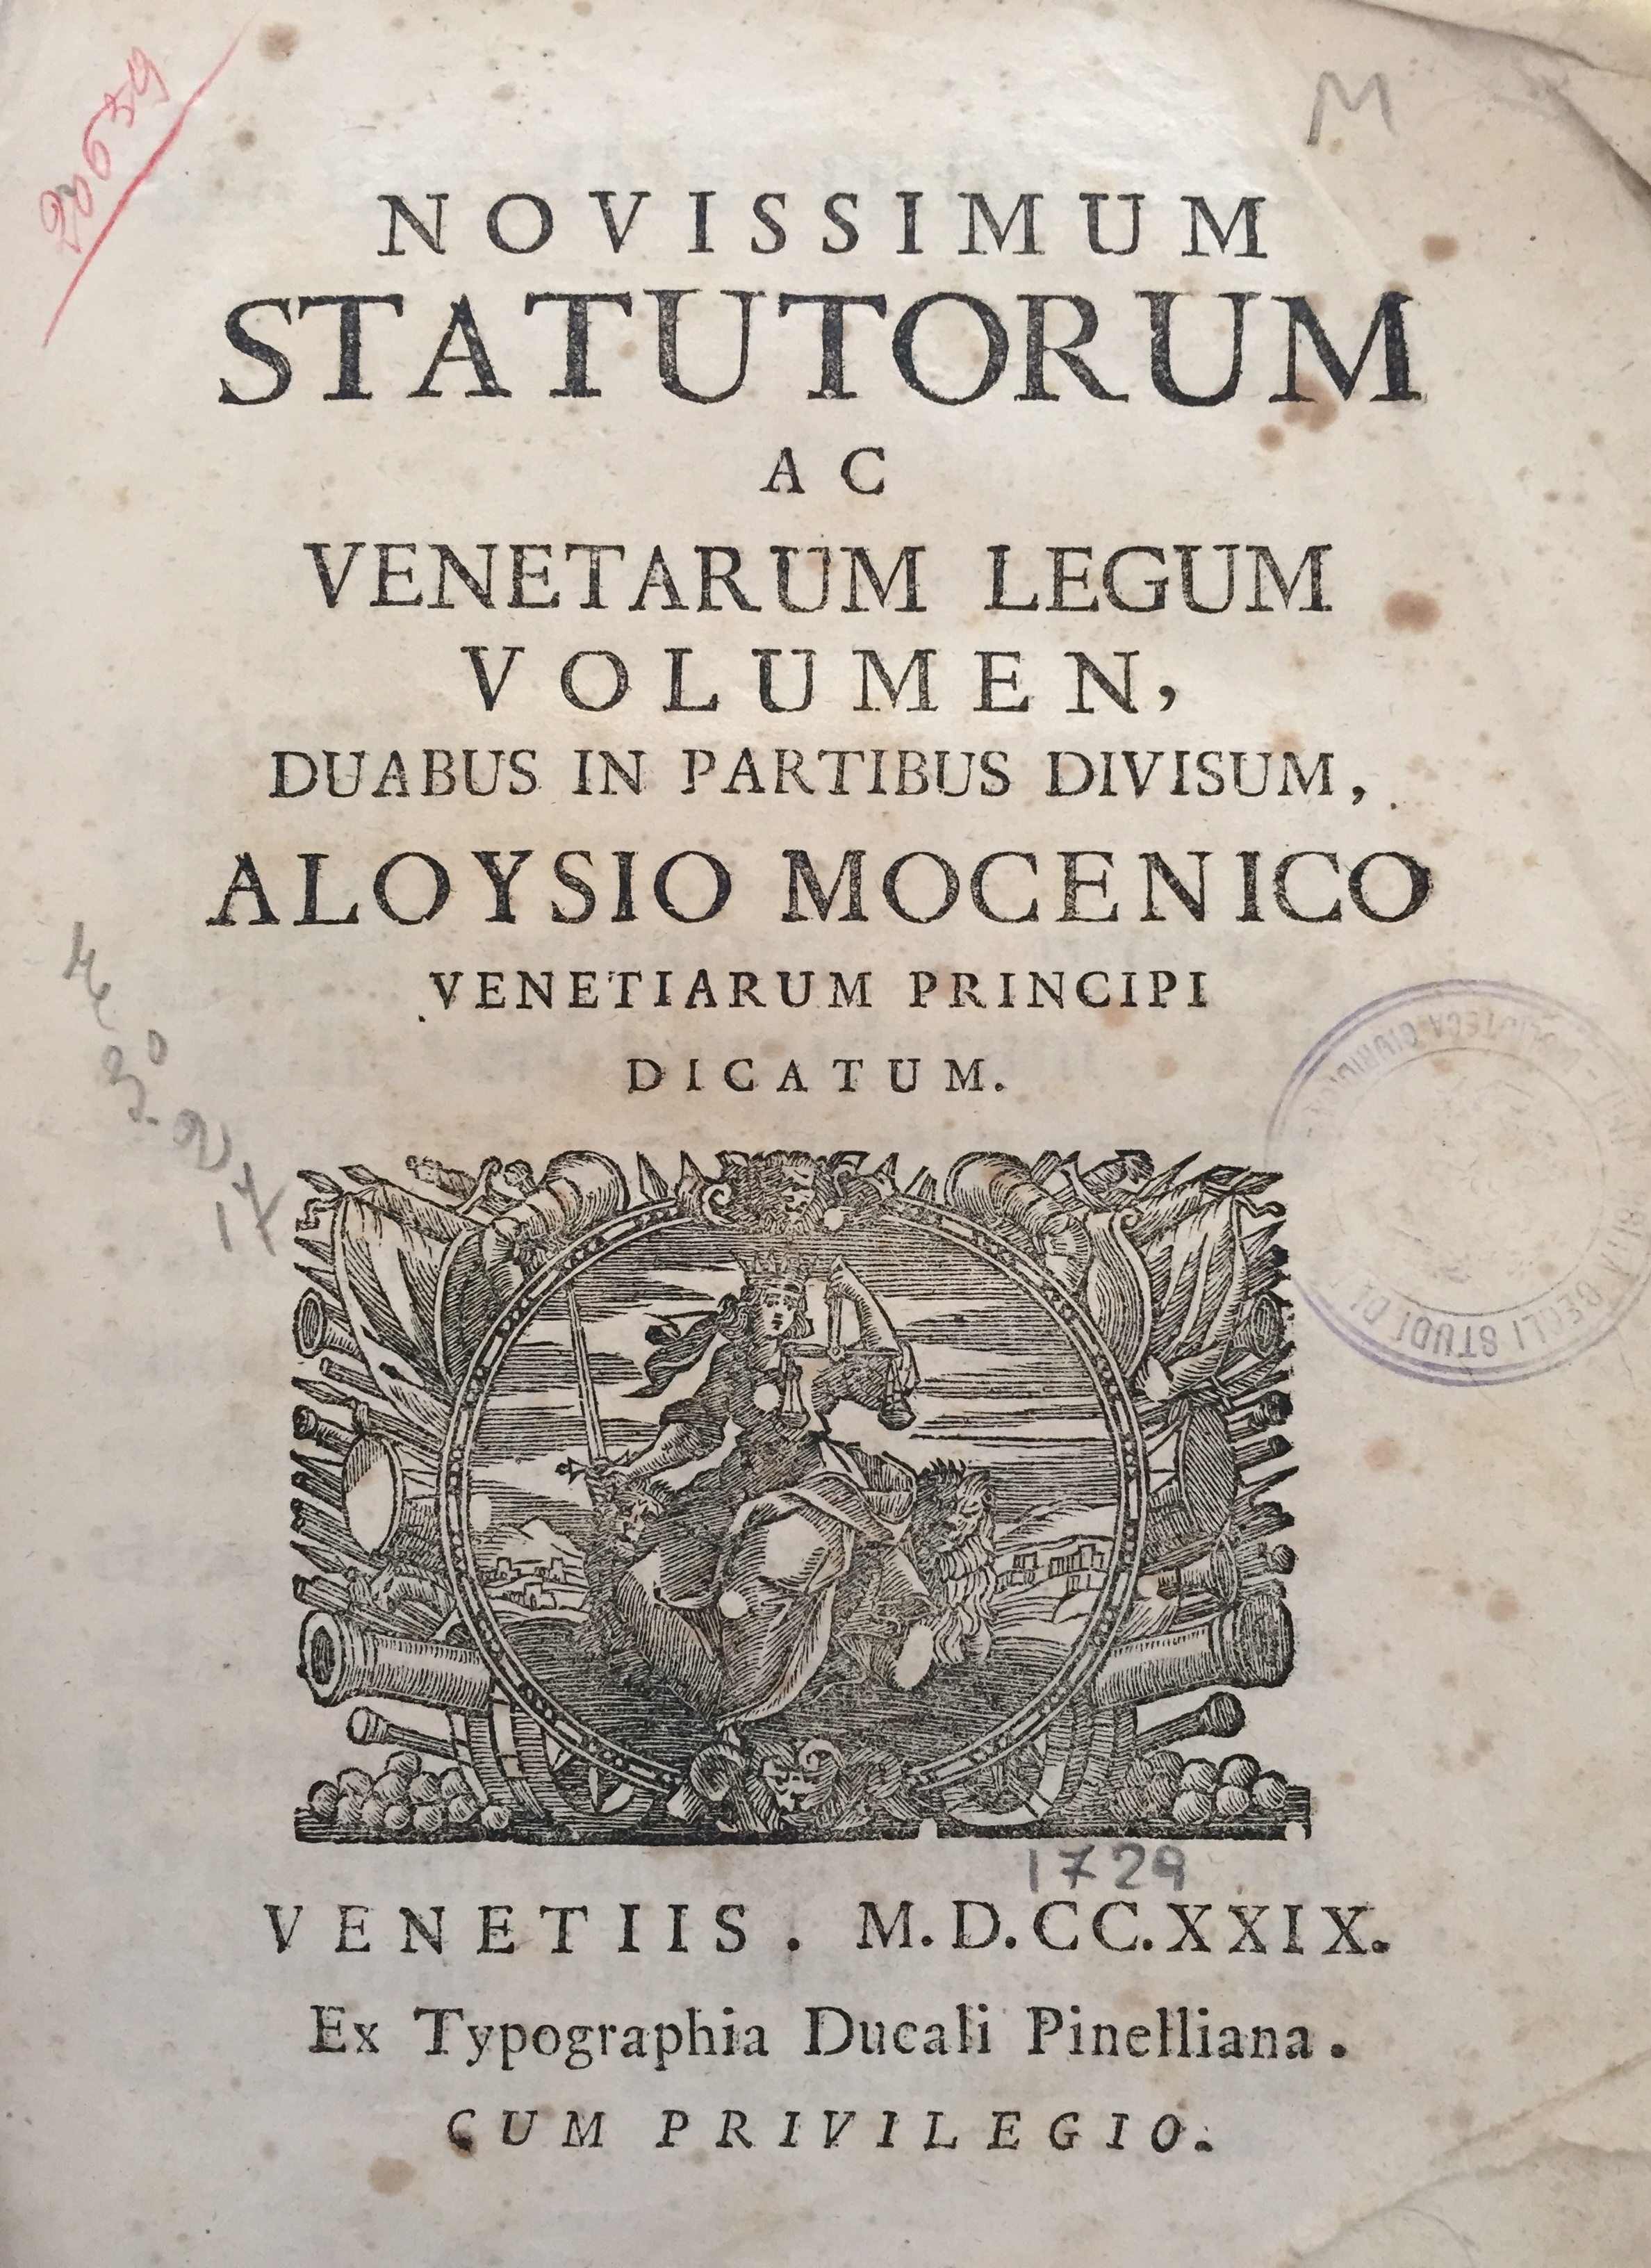 Novissimum statutorum ac Venetarum legum volumen